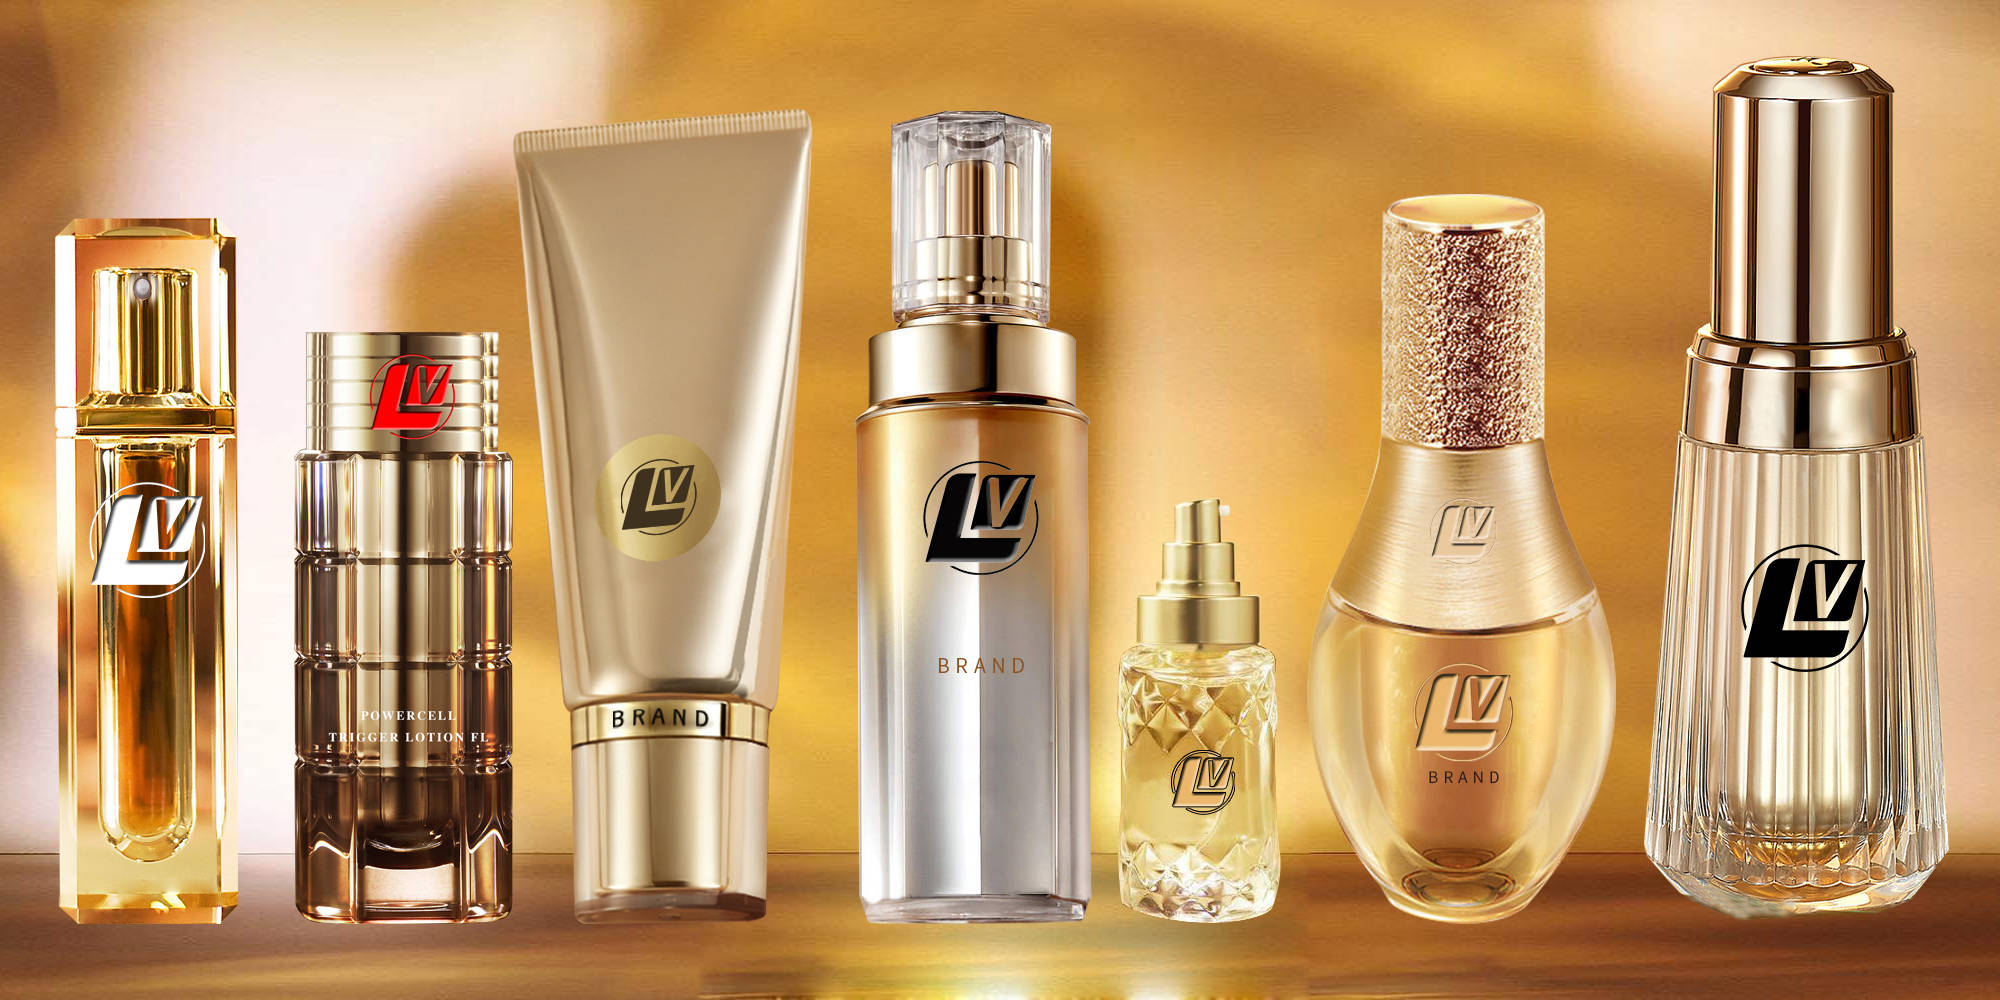 品牌功效品牌在6000多个化妆品品牌中脱颖而出,将植物学,生物化学